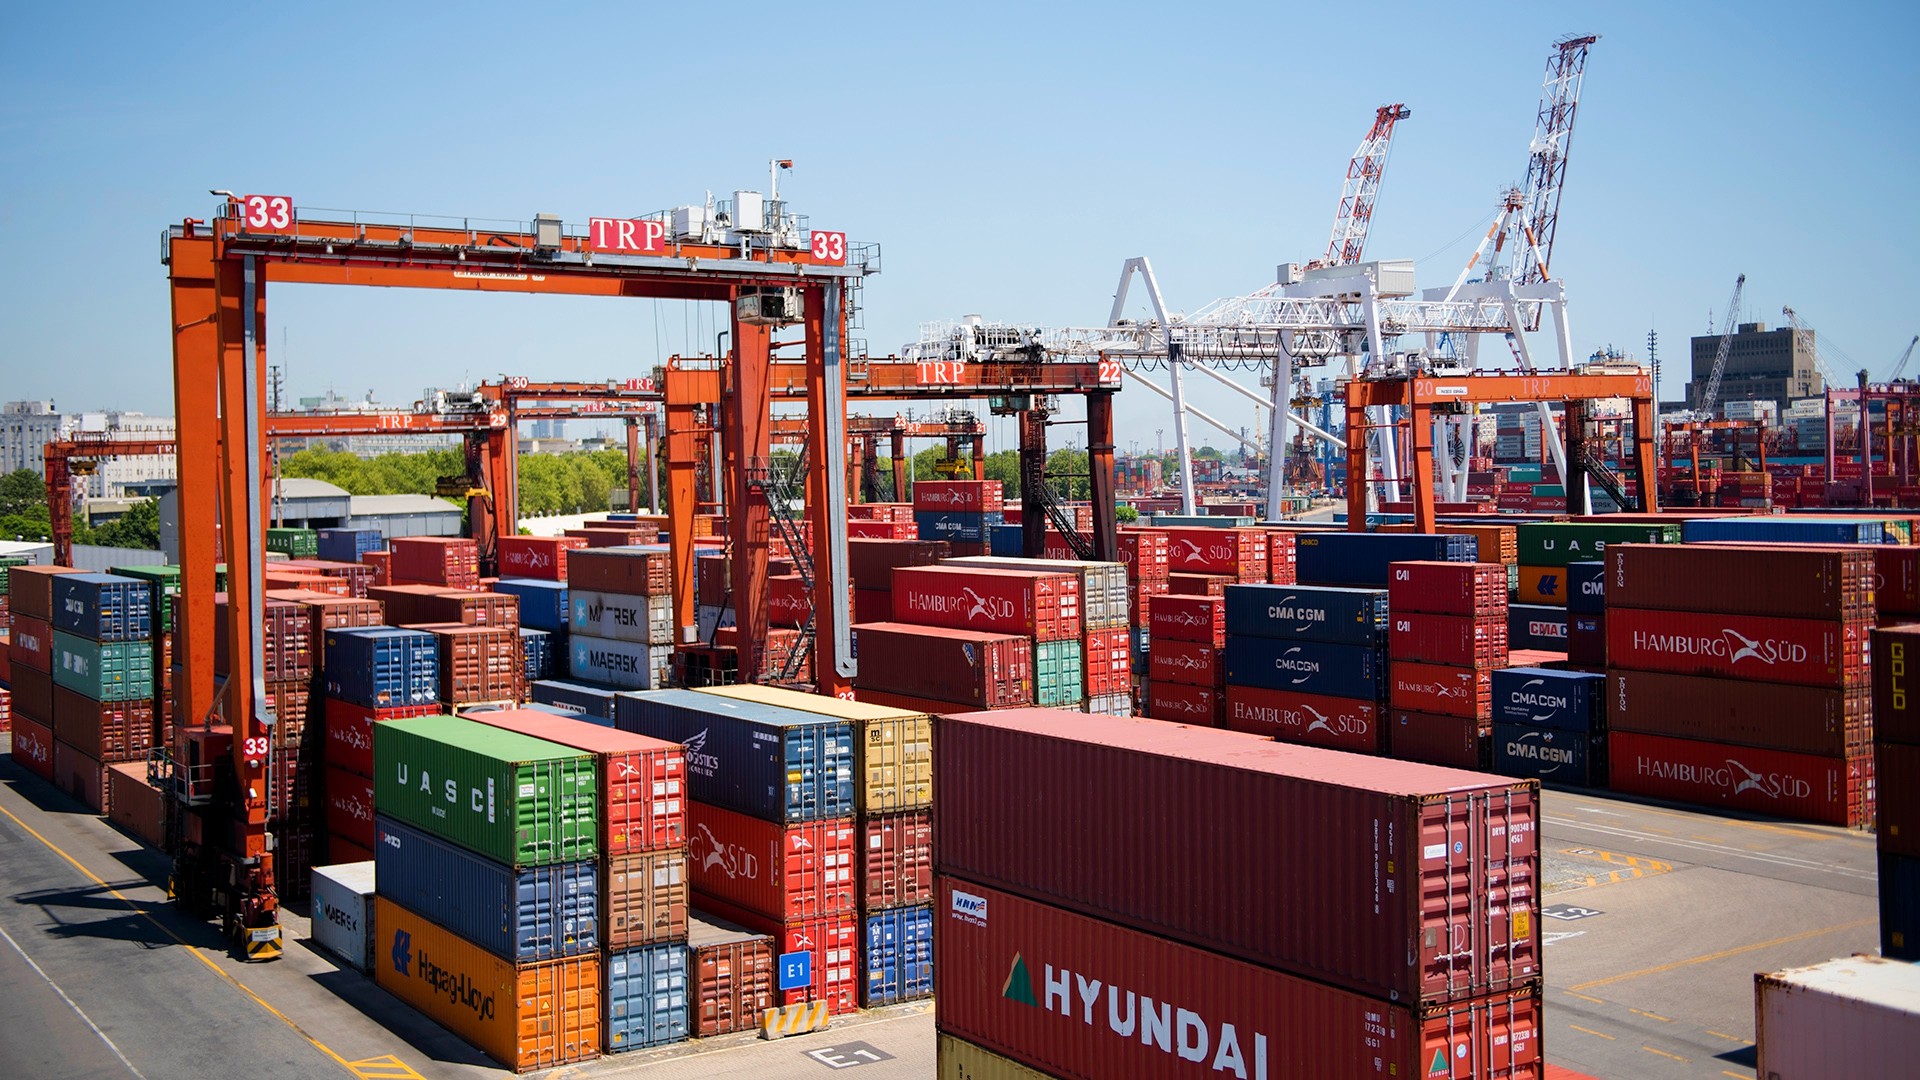 Cayeron las exportaciones y subieron las importaciones: qué sucedió con la balanza comercial, según el INDEC - El Intransigente